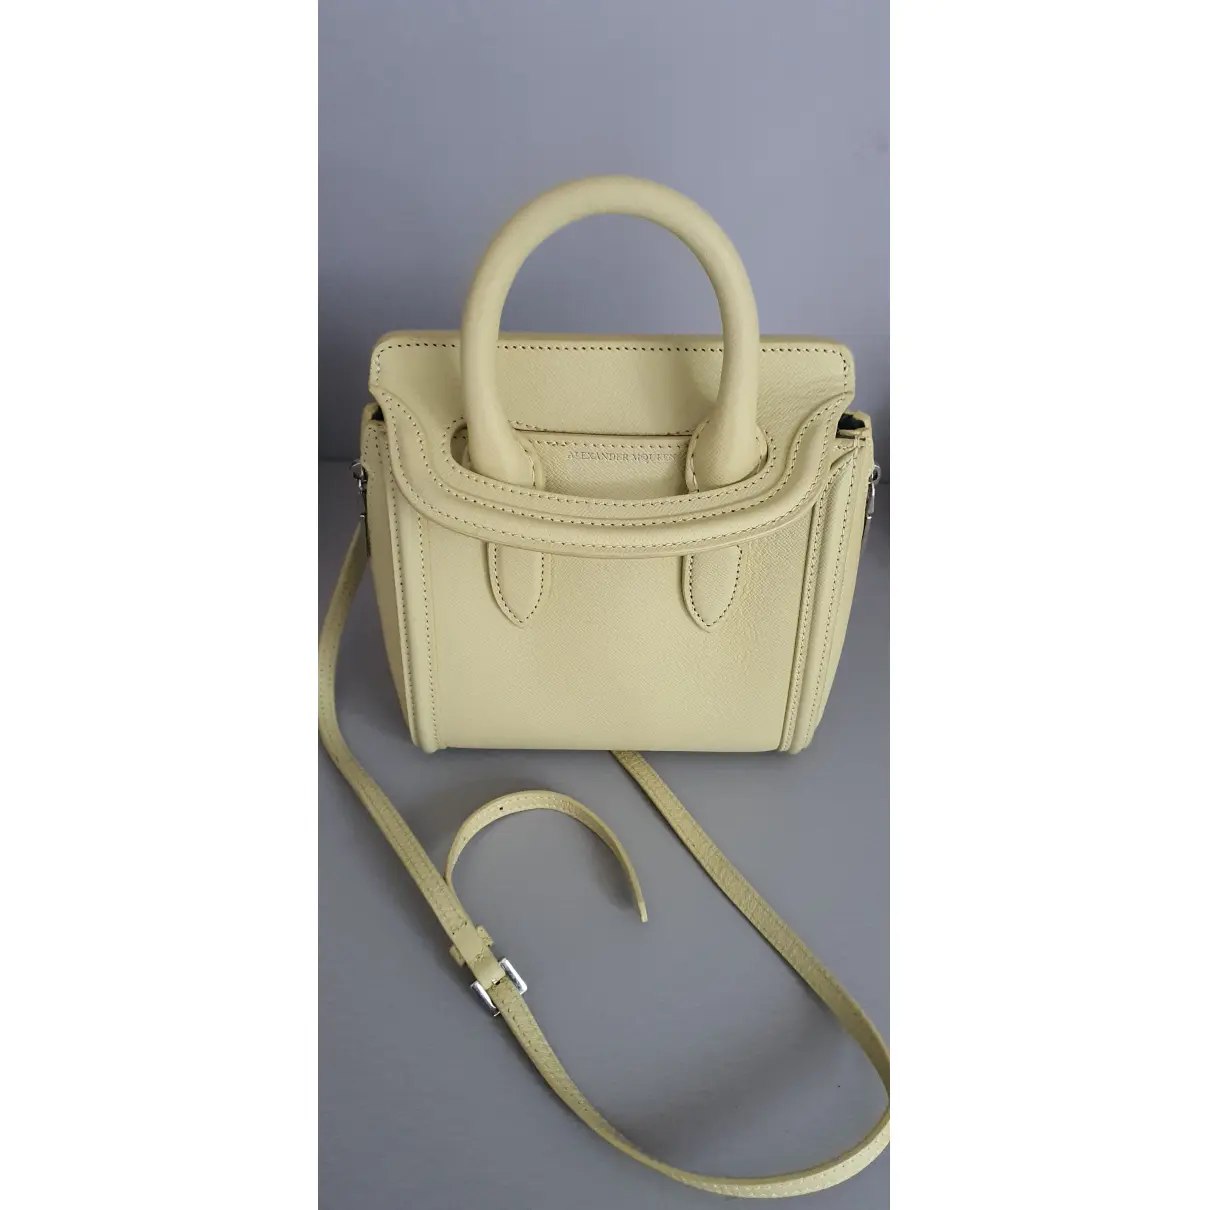 Luxury Alexander McQueen Handbags Women